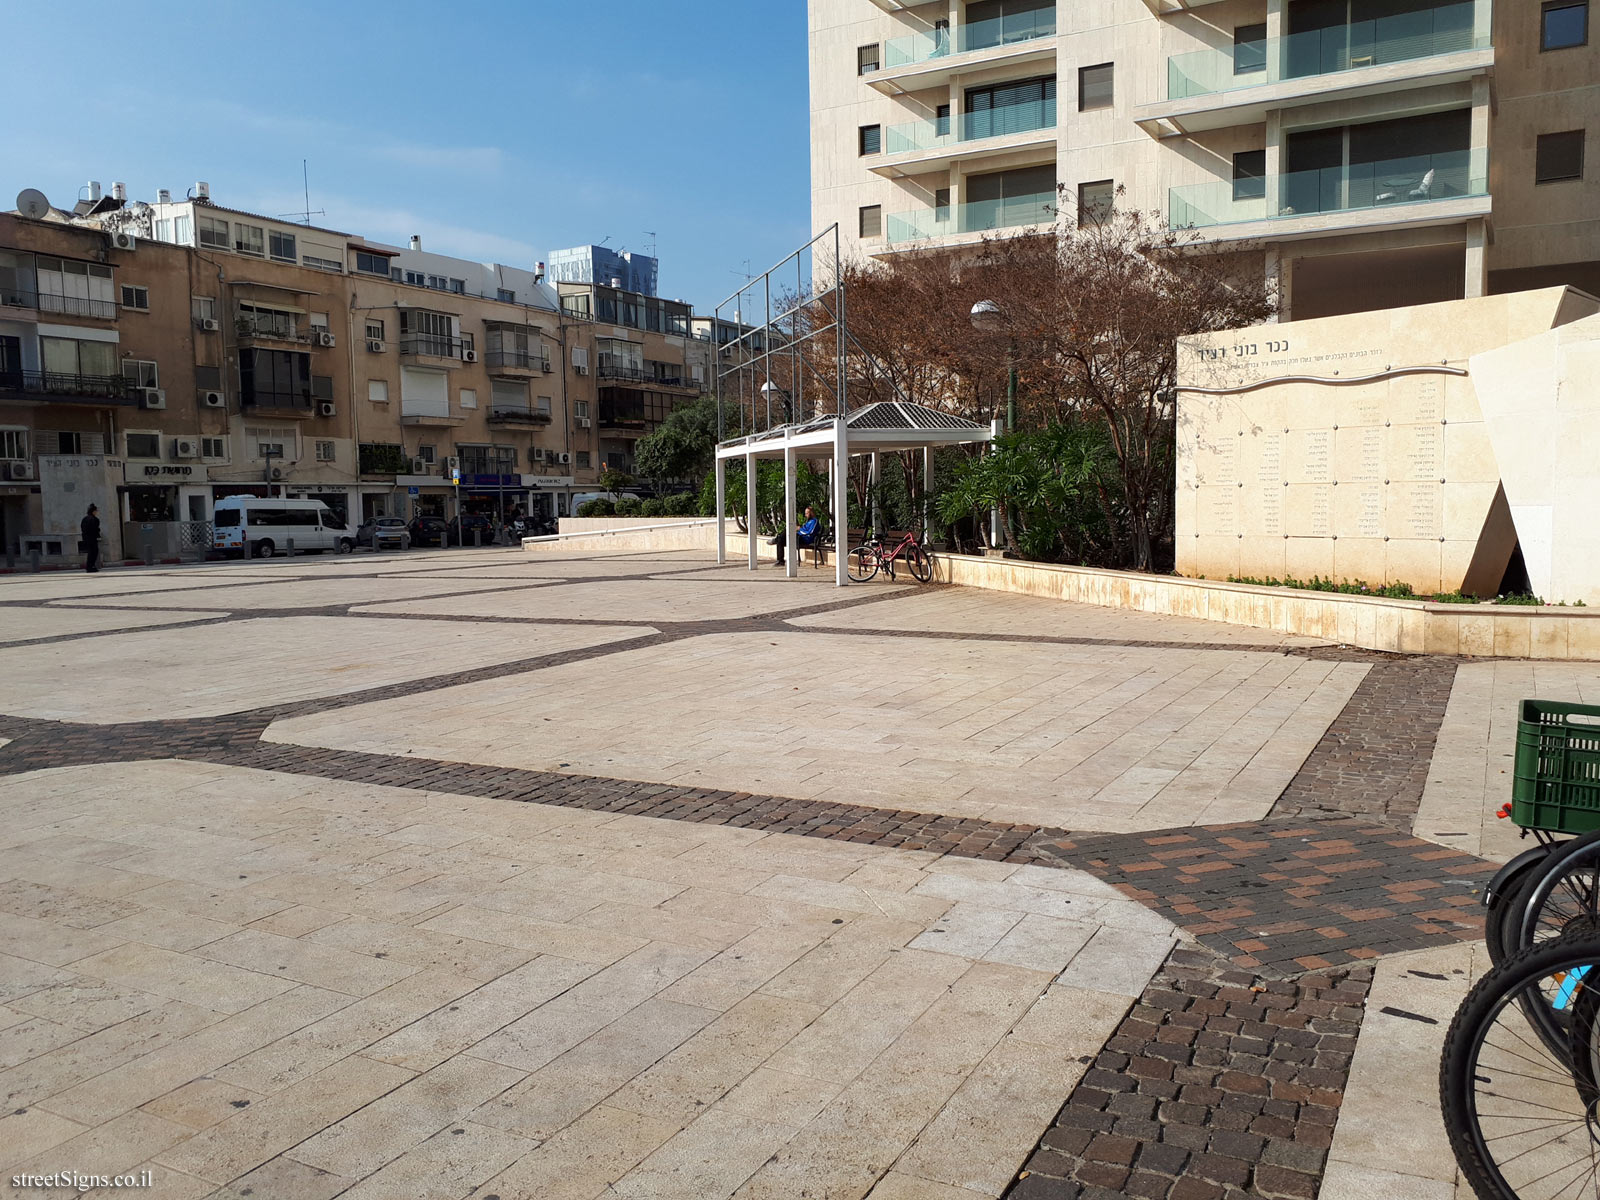 Tel Aviv - The Builders of the city Square - Basel St 35, Tel Aviv-Yafo, Israel